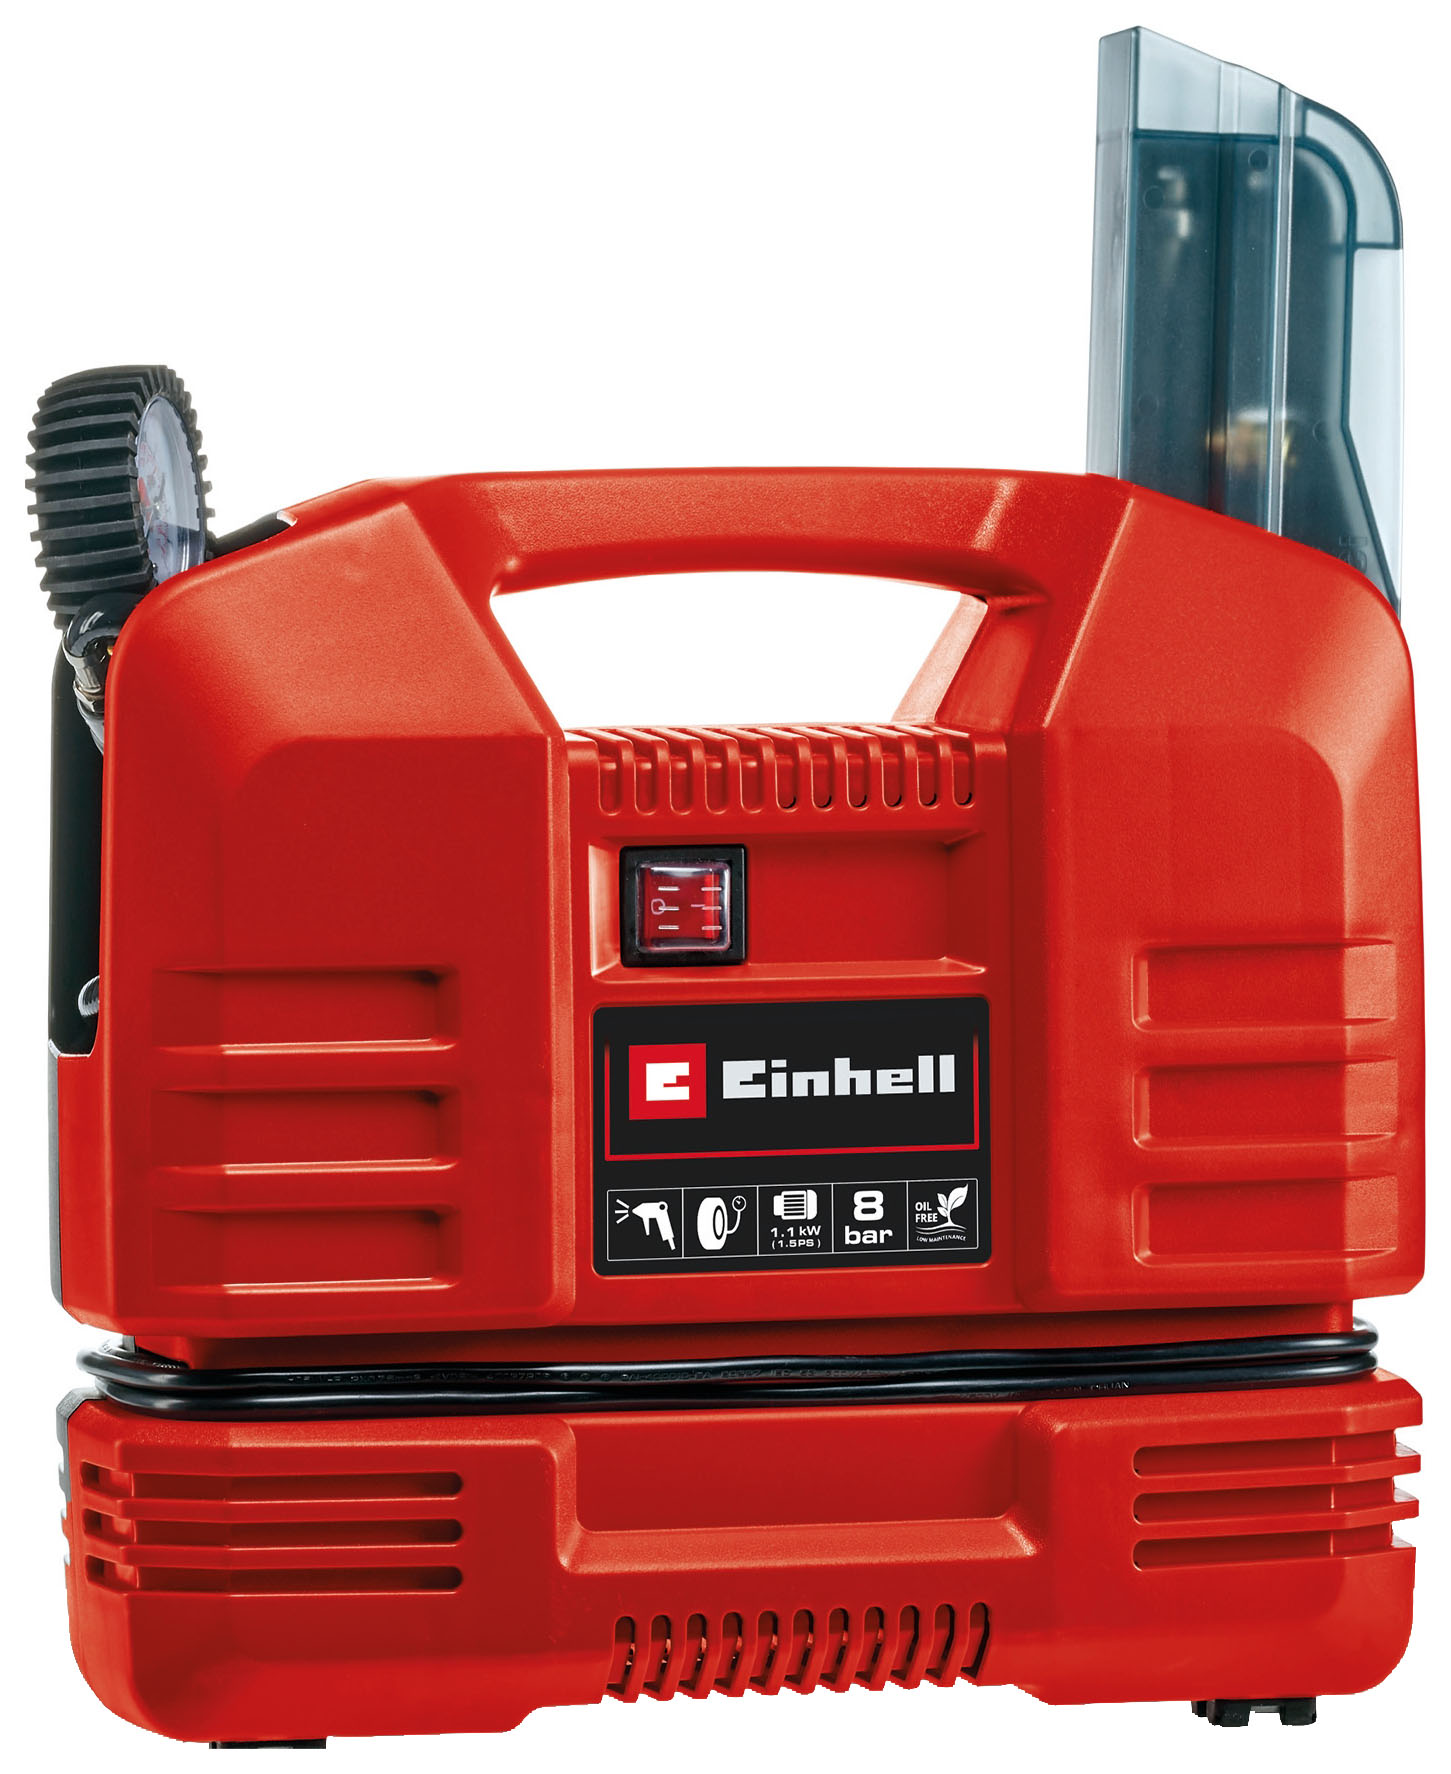 Einhell 1.47HP 8 Bar Portable Corded Oil Free Air Compressor